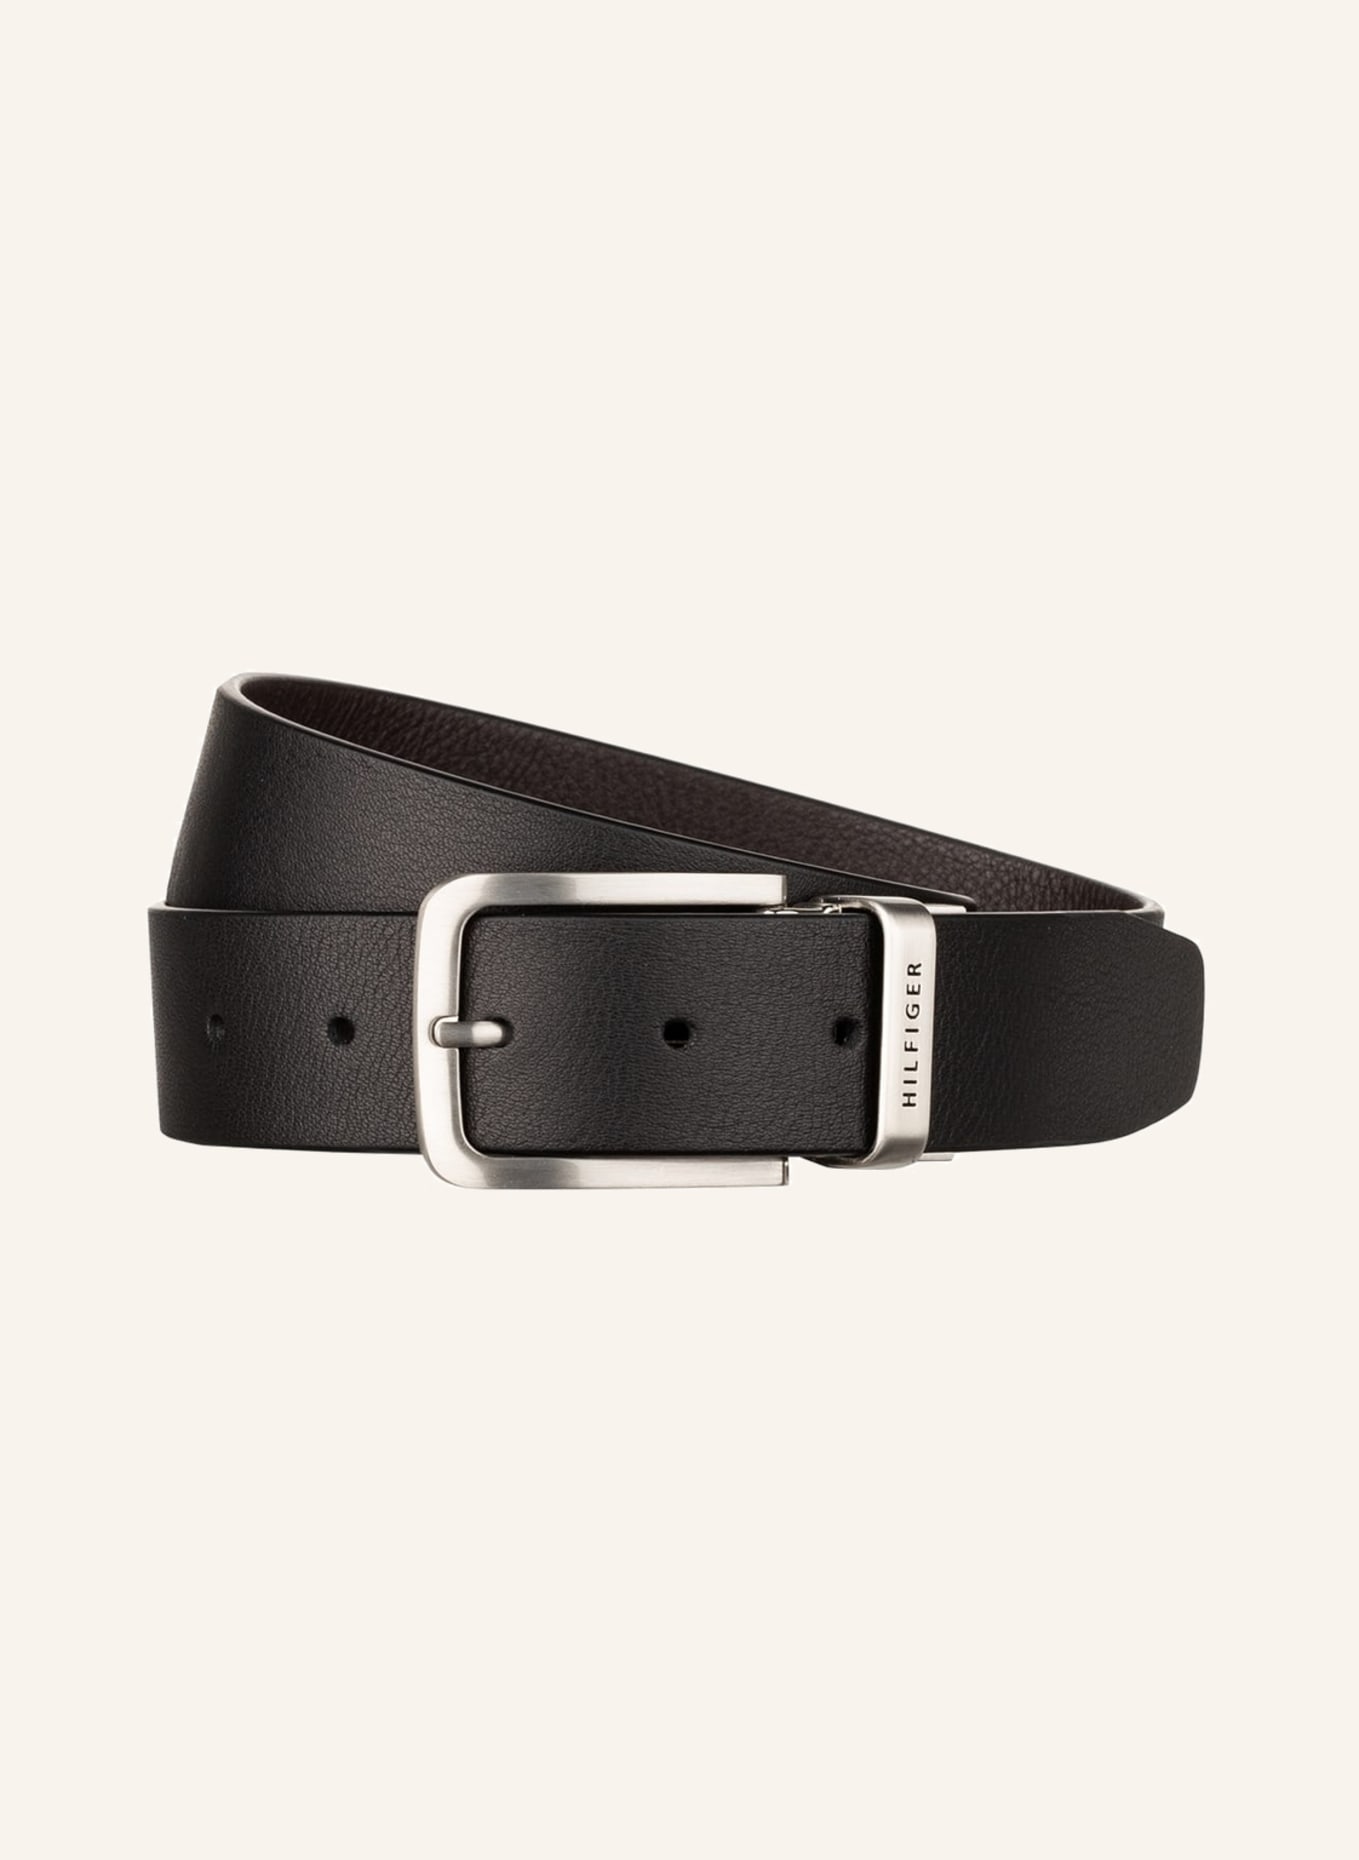 TOMMY HILFIGER Reversible belt, Color: BLACK (Image 1)